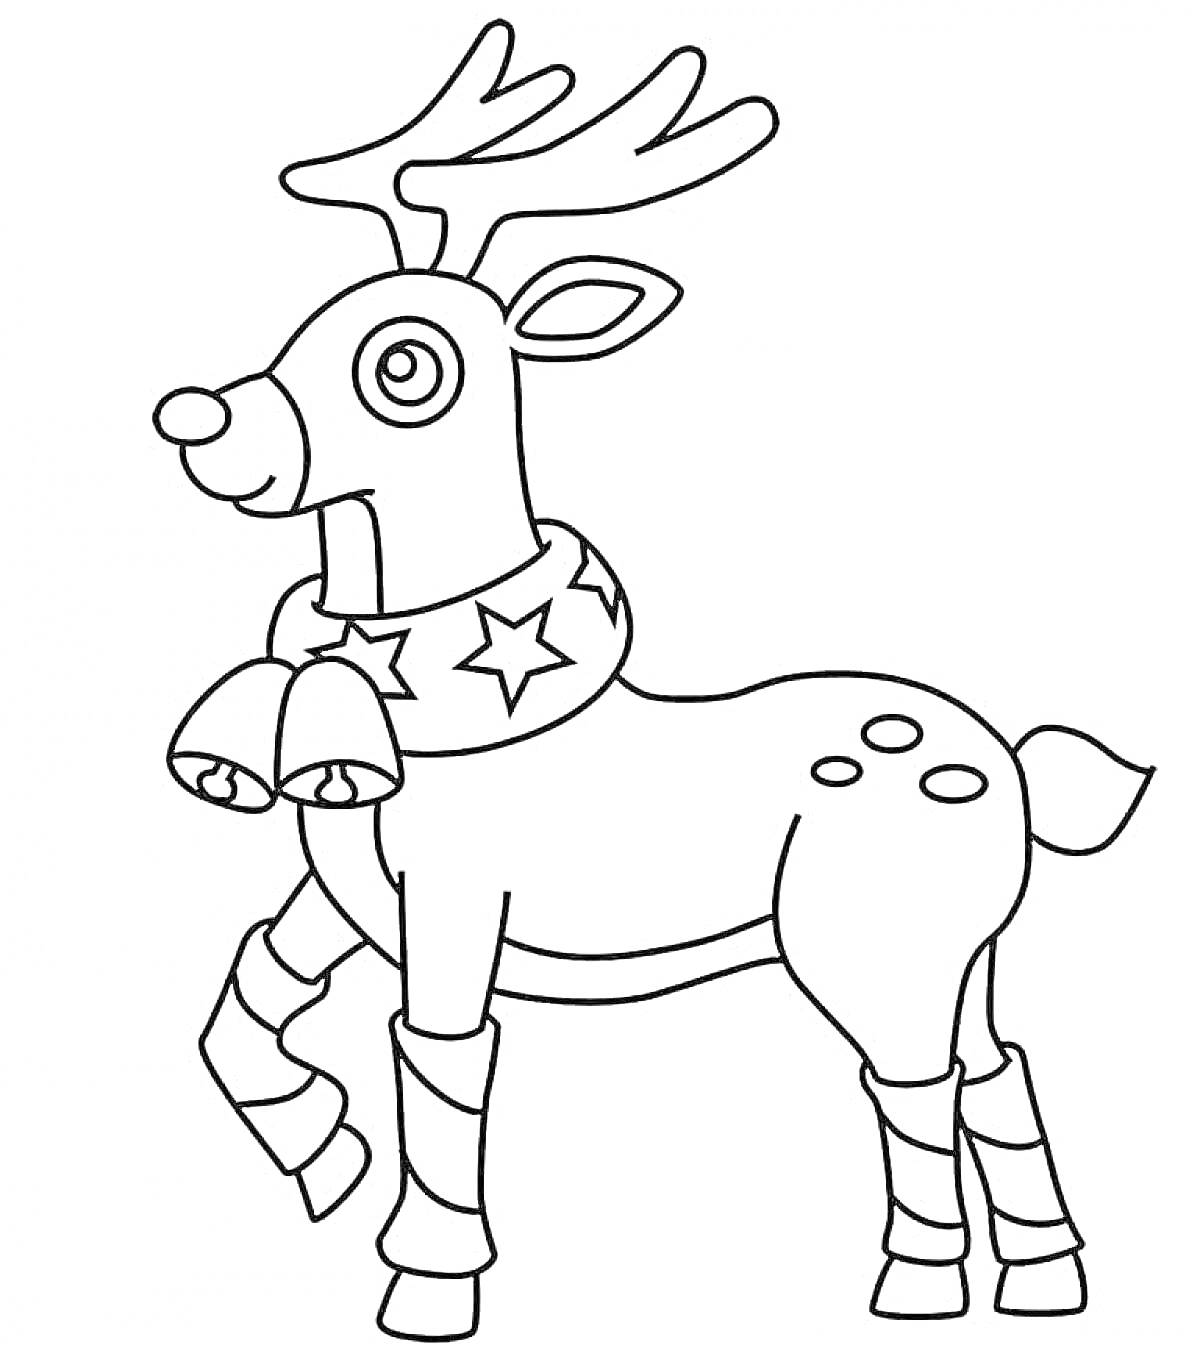 Раскраска новогодний олень с колокольчиками и звёздами на шарфе